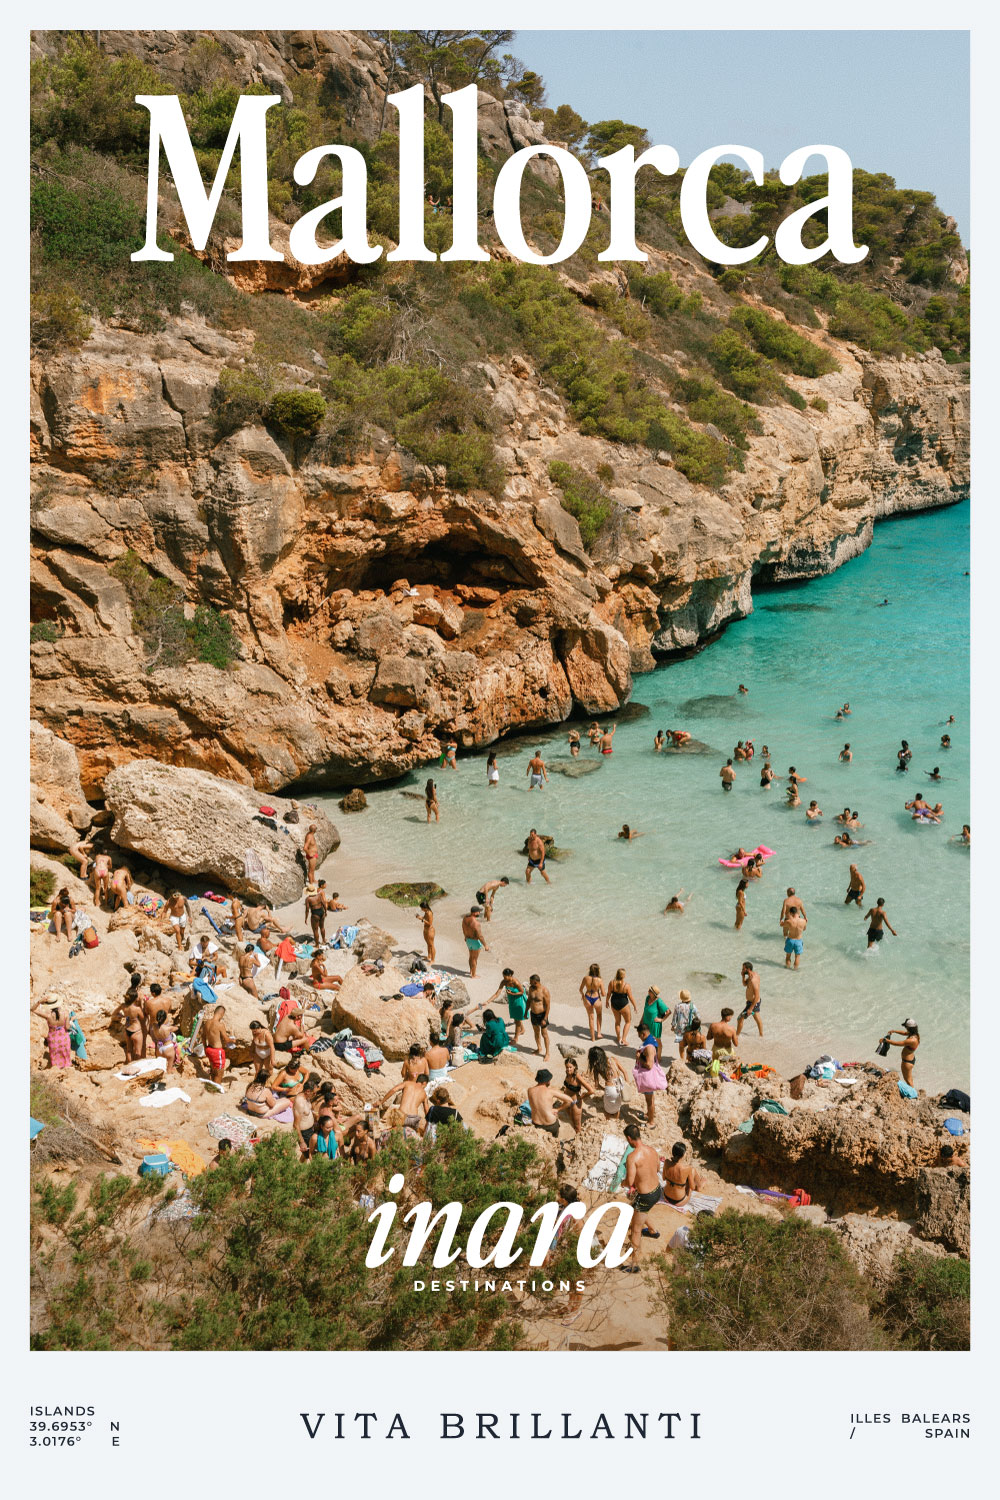 Mallorca destination cover